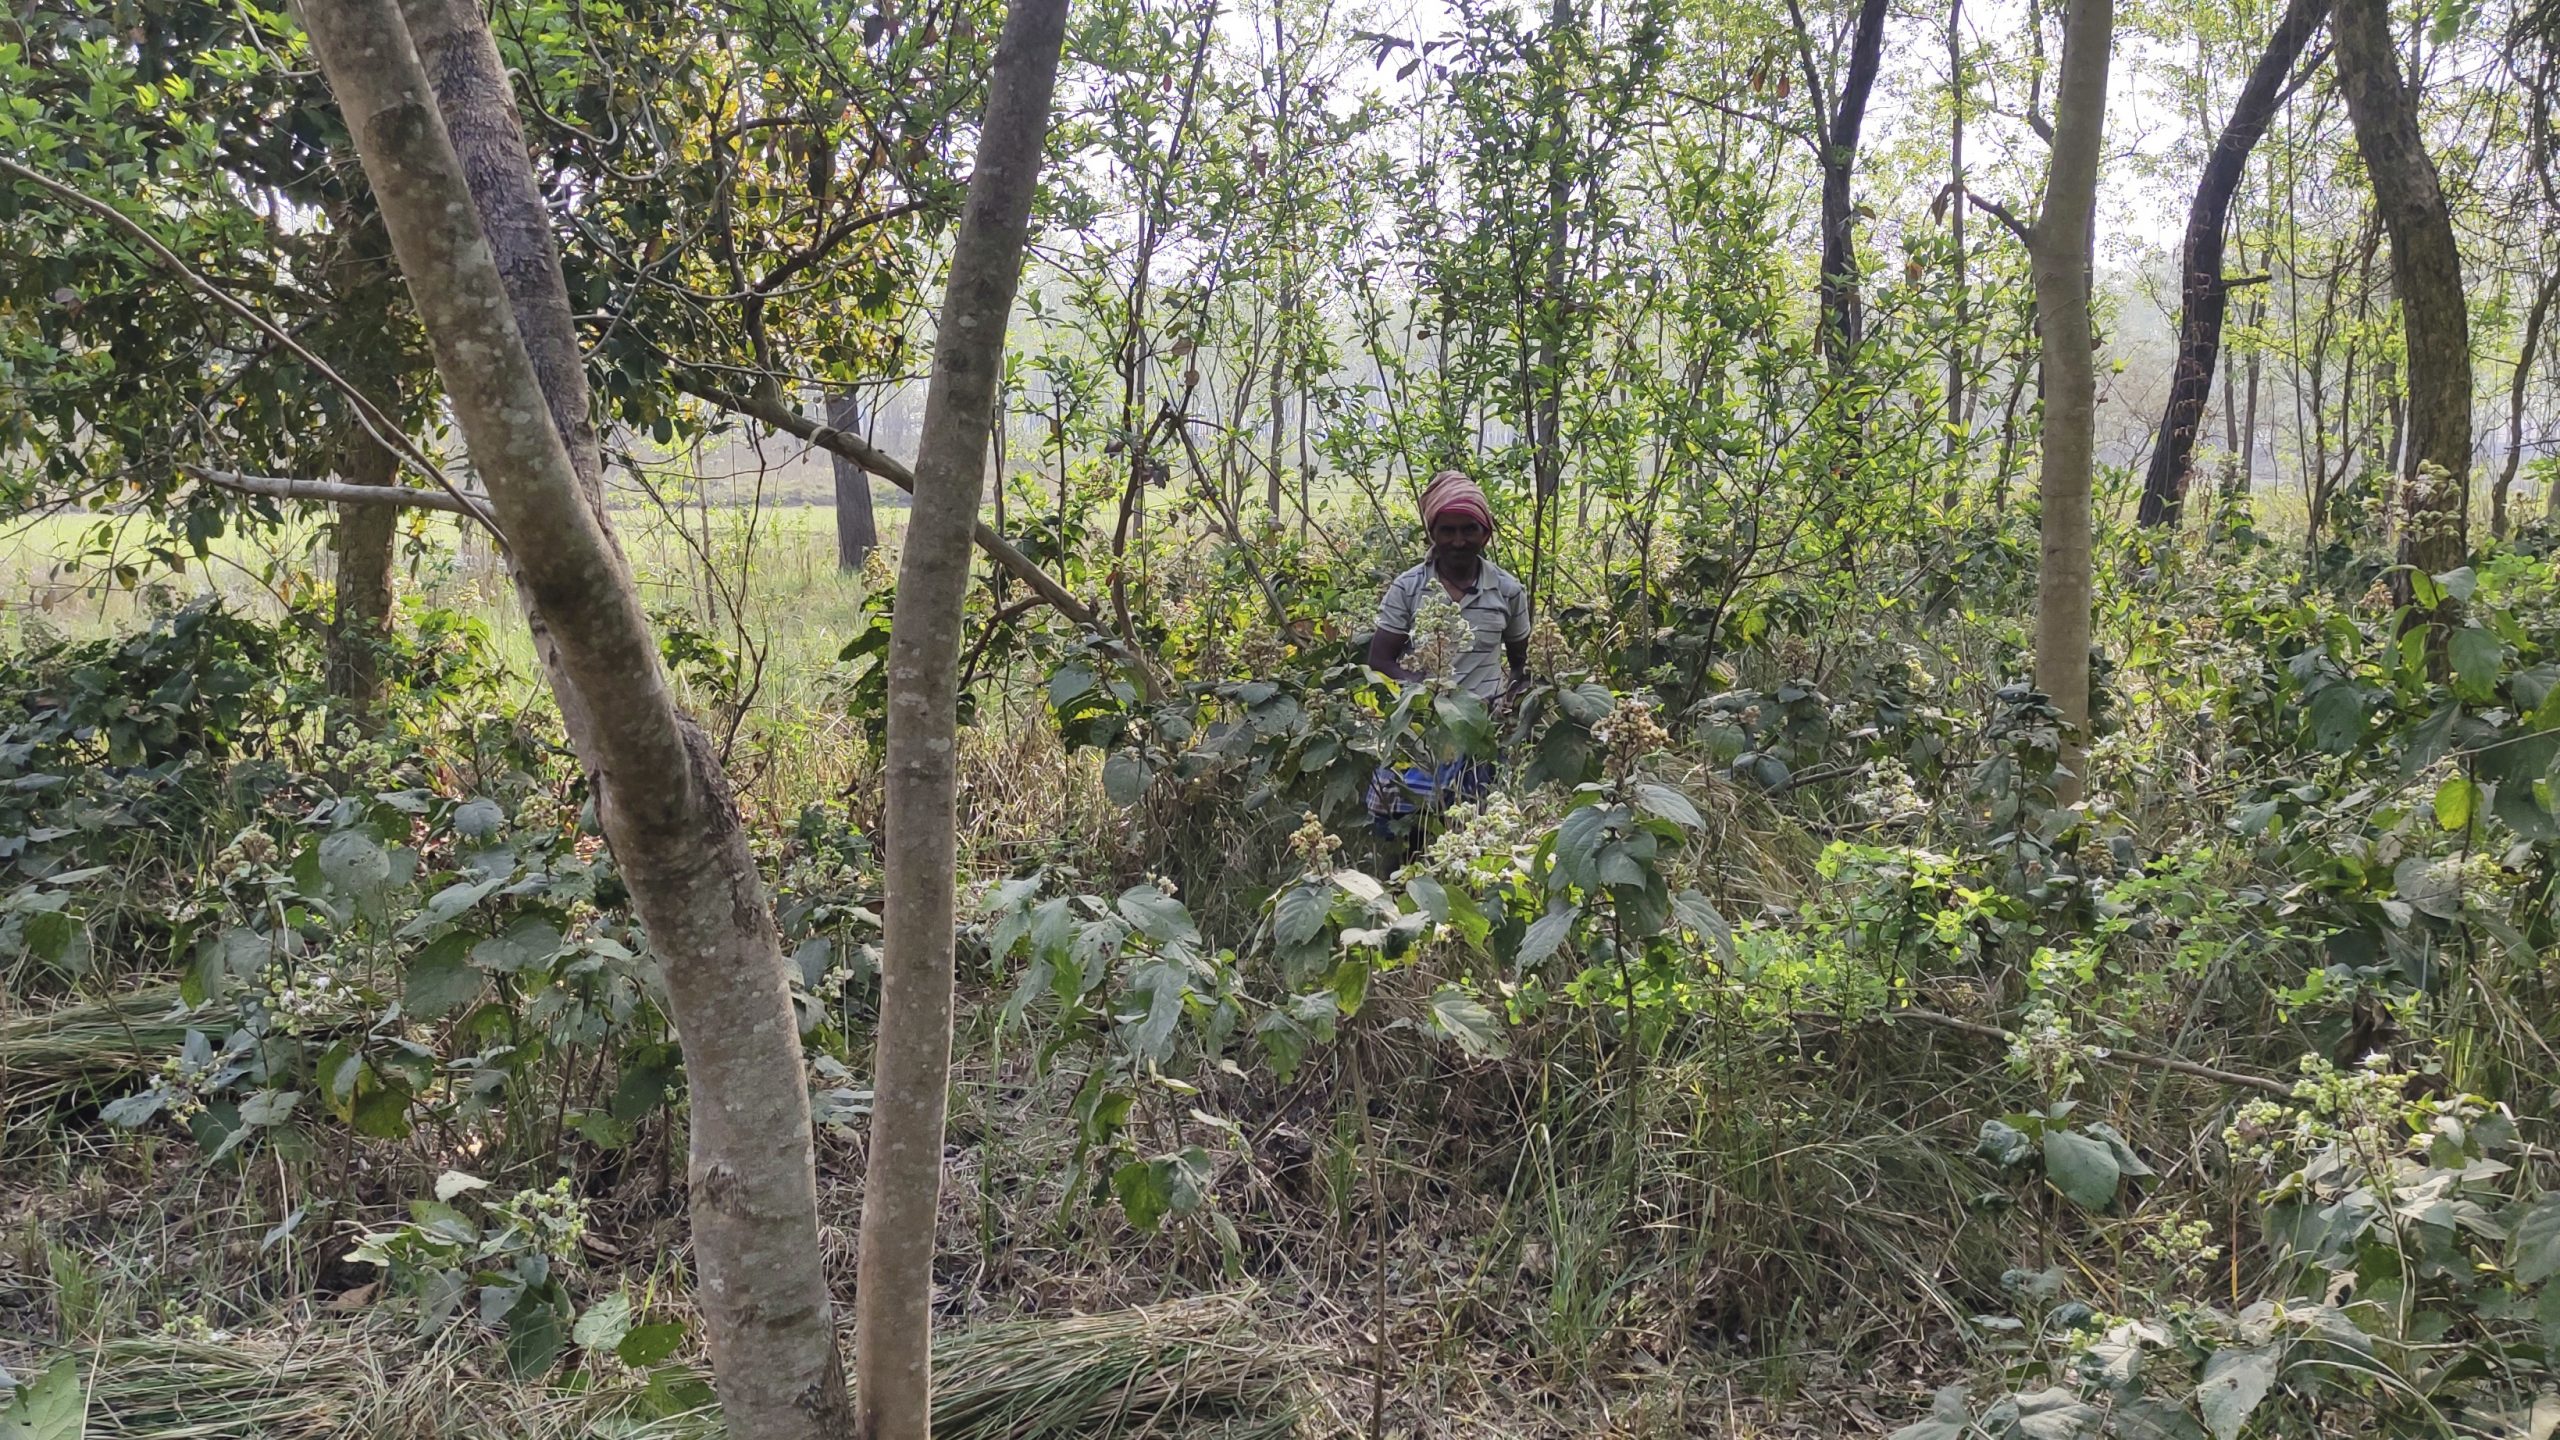 The Pragatishil community forest in Kapilvastu. Photo: Mukesh Pokhrel